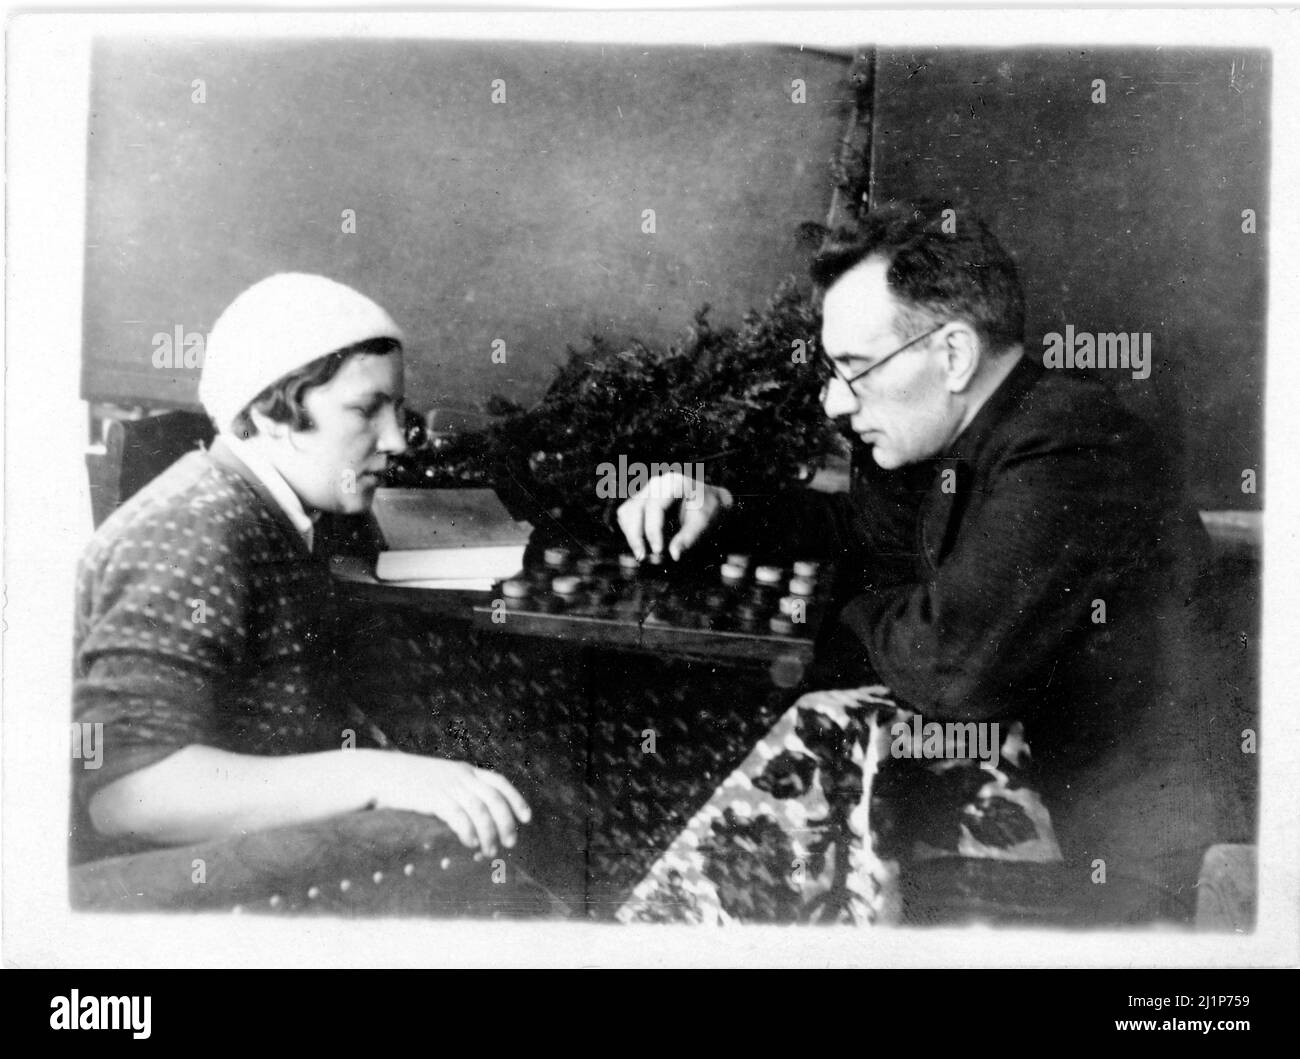 Campione del mondo di Scacchi sovietici e russi e Gran Maestro Mikhail Botvinnik si pratica su una scacchiera con un collega non identificato, 1936. Foto Stock